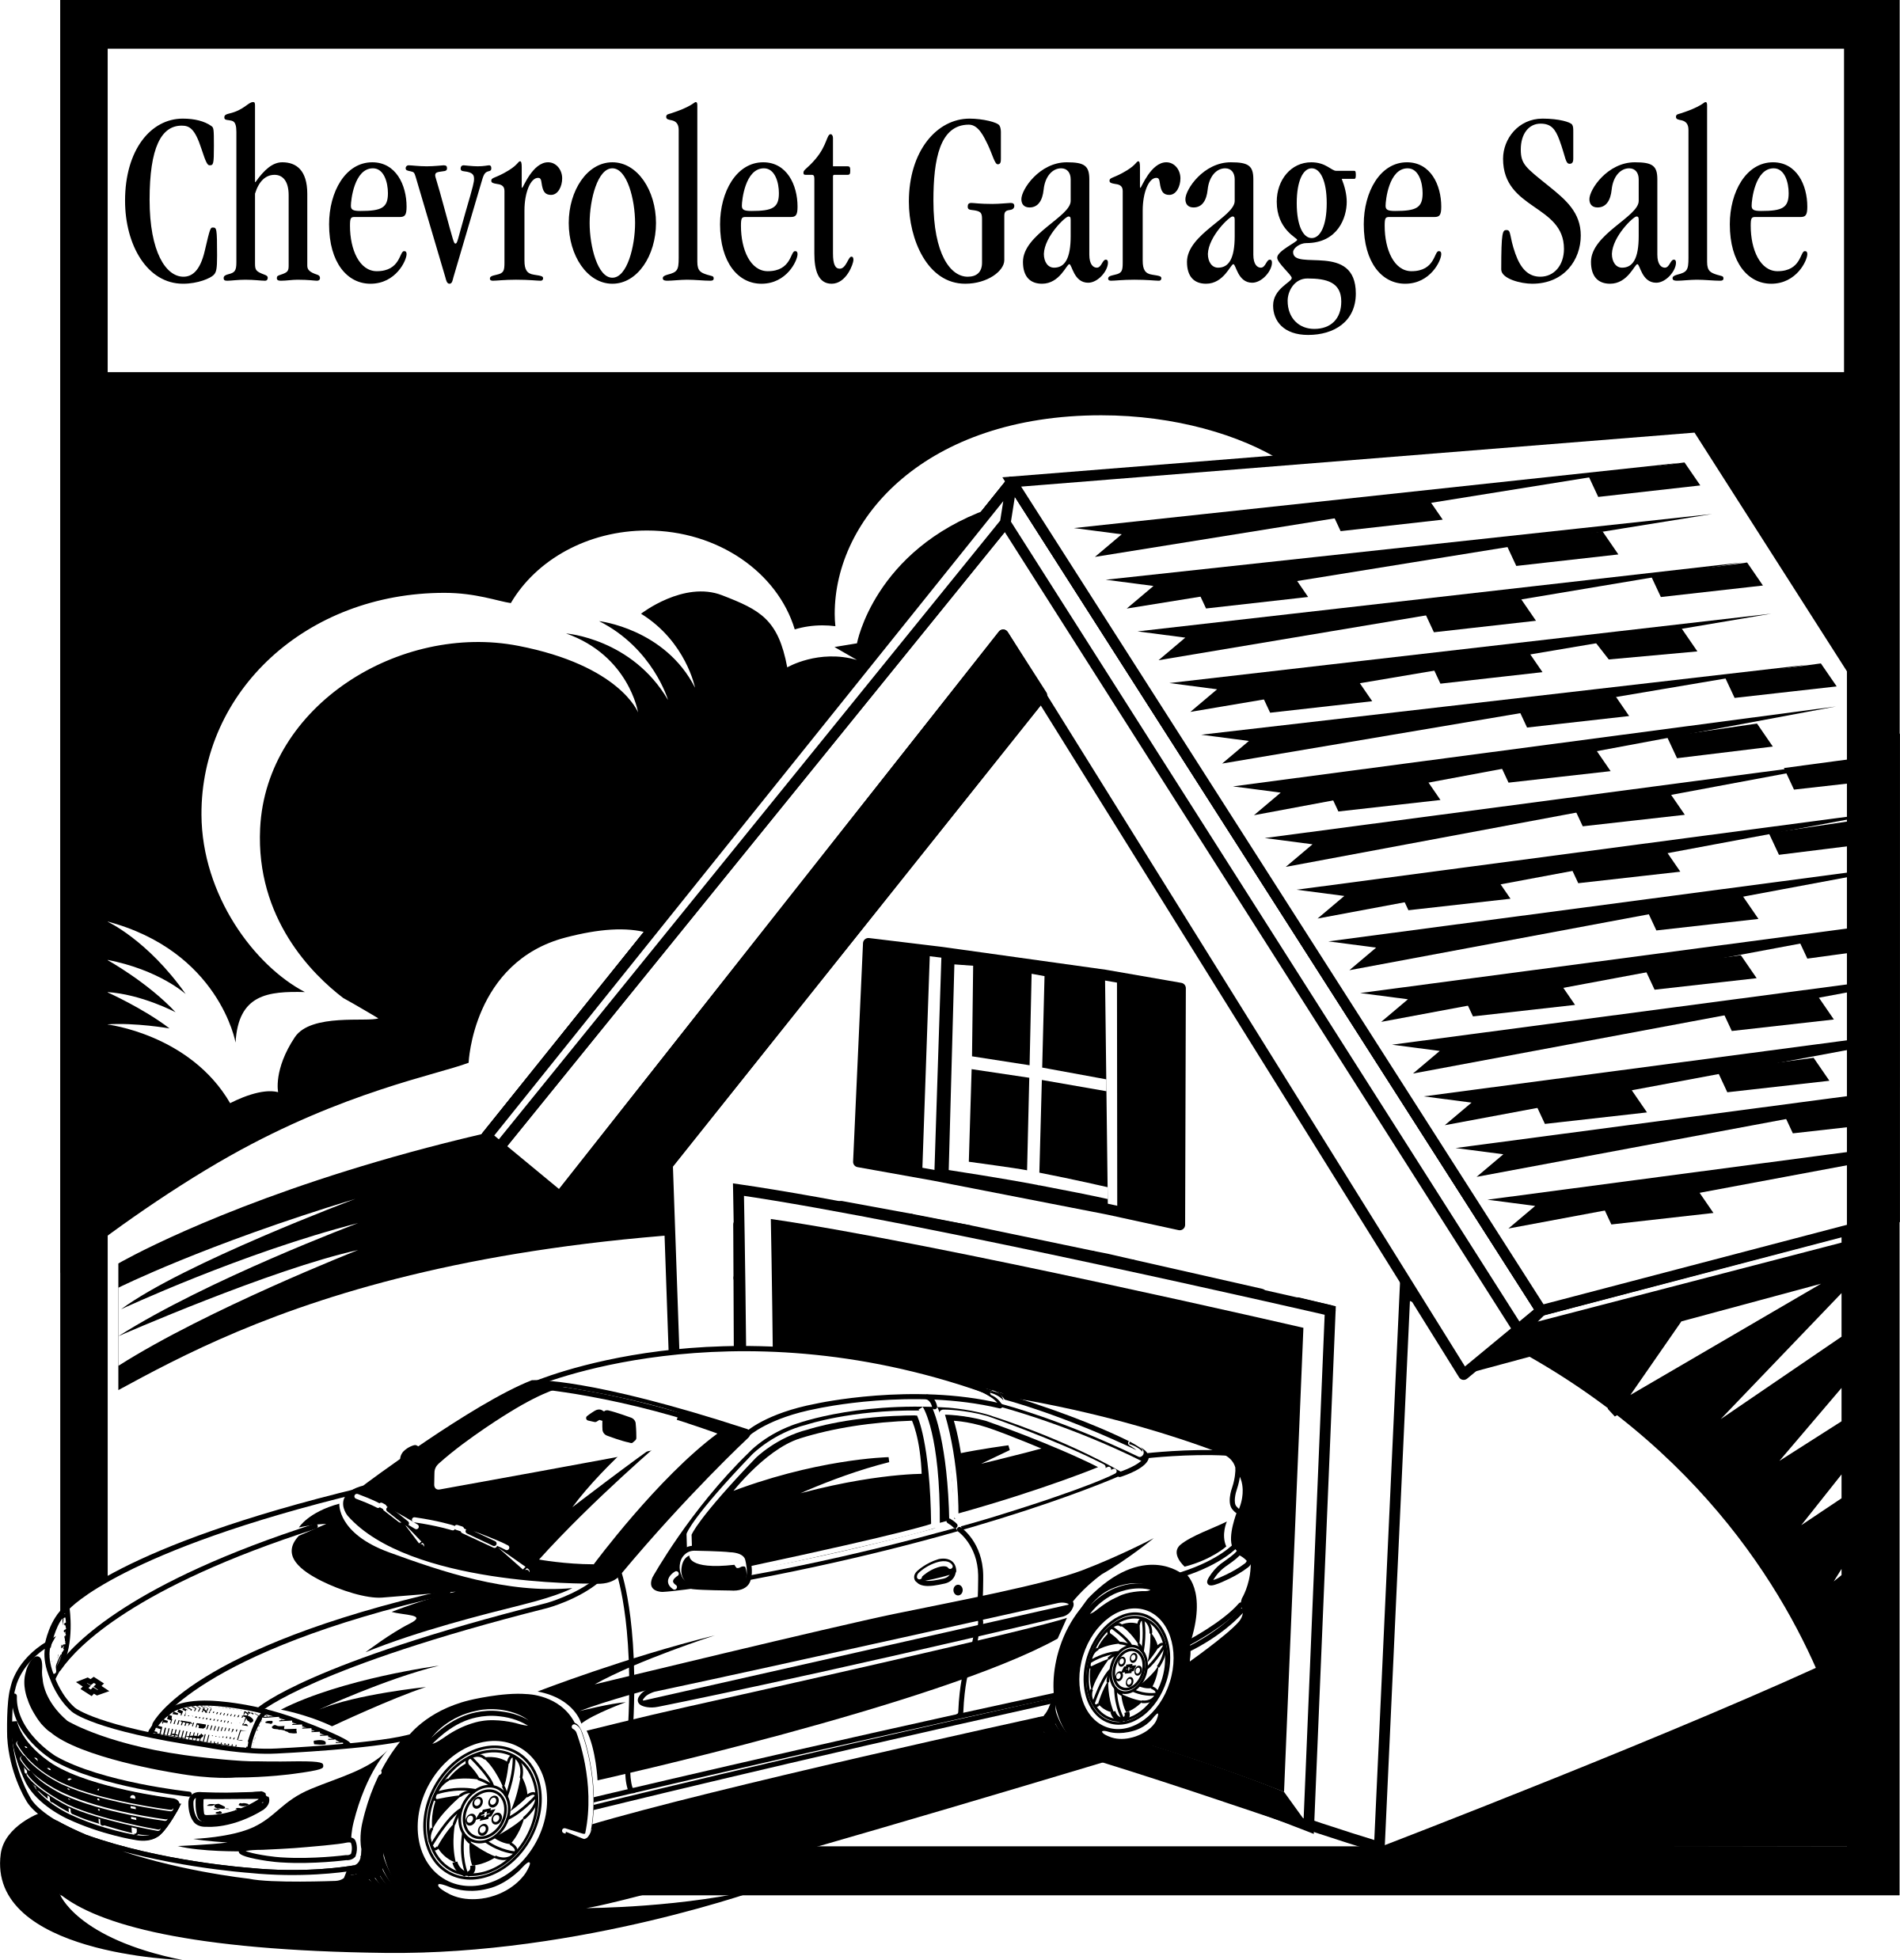 Chevrolet Garage Logo - Chevrolet Garage Sale Logo PNG Transparent & SVG Vector